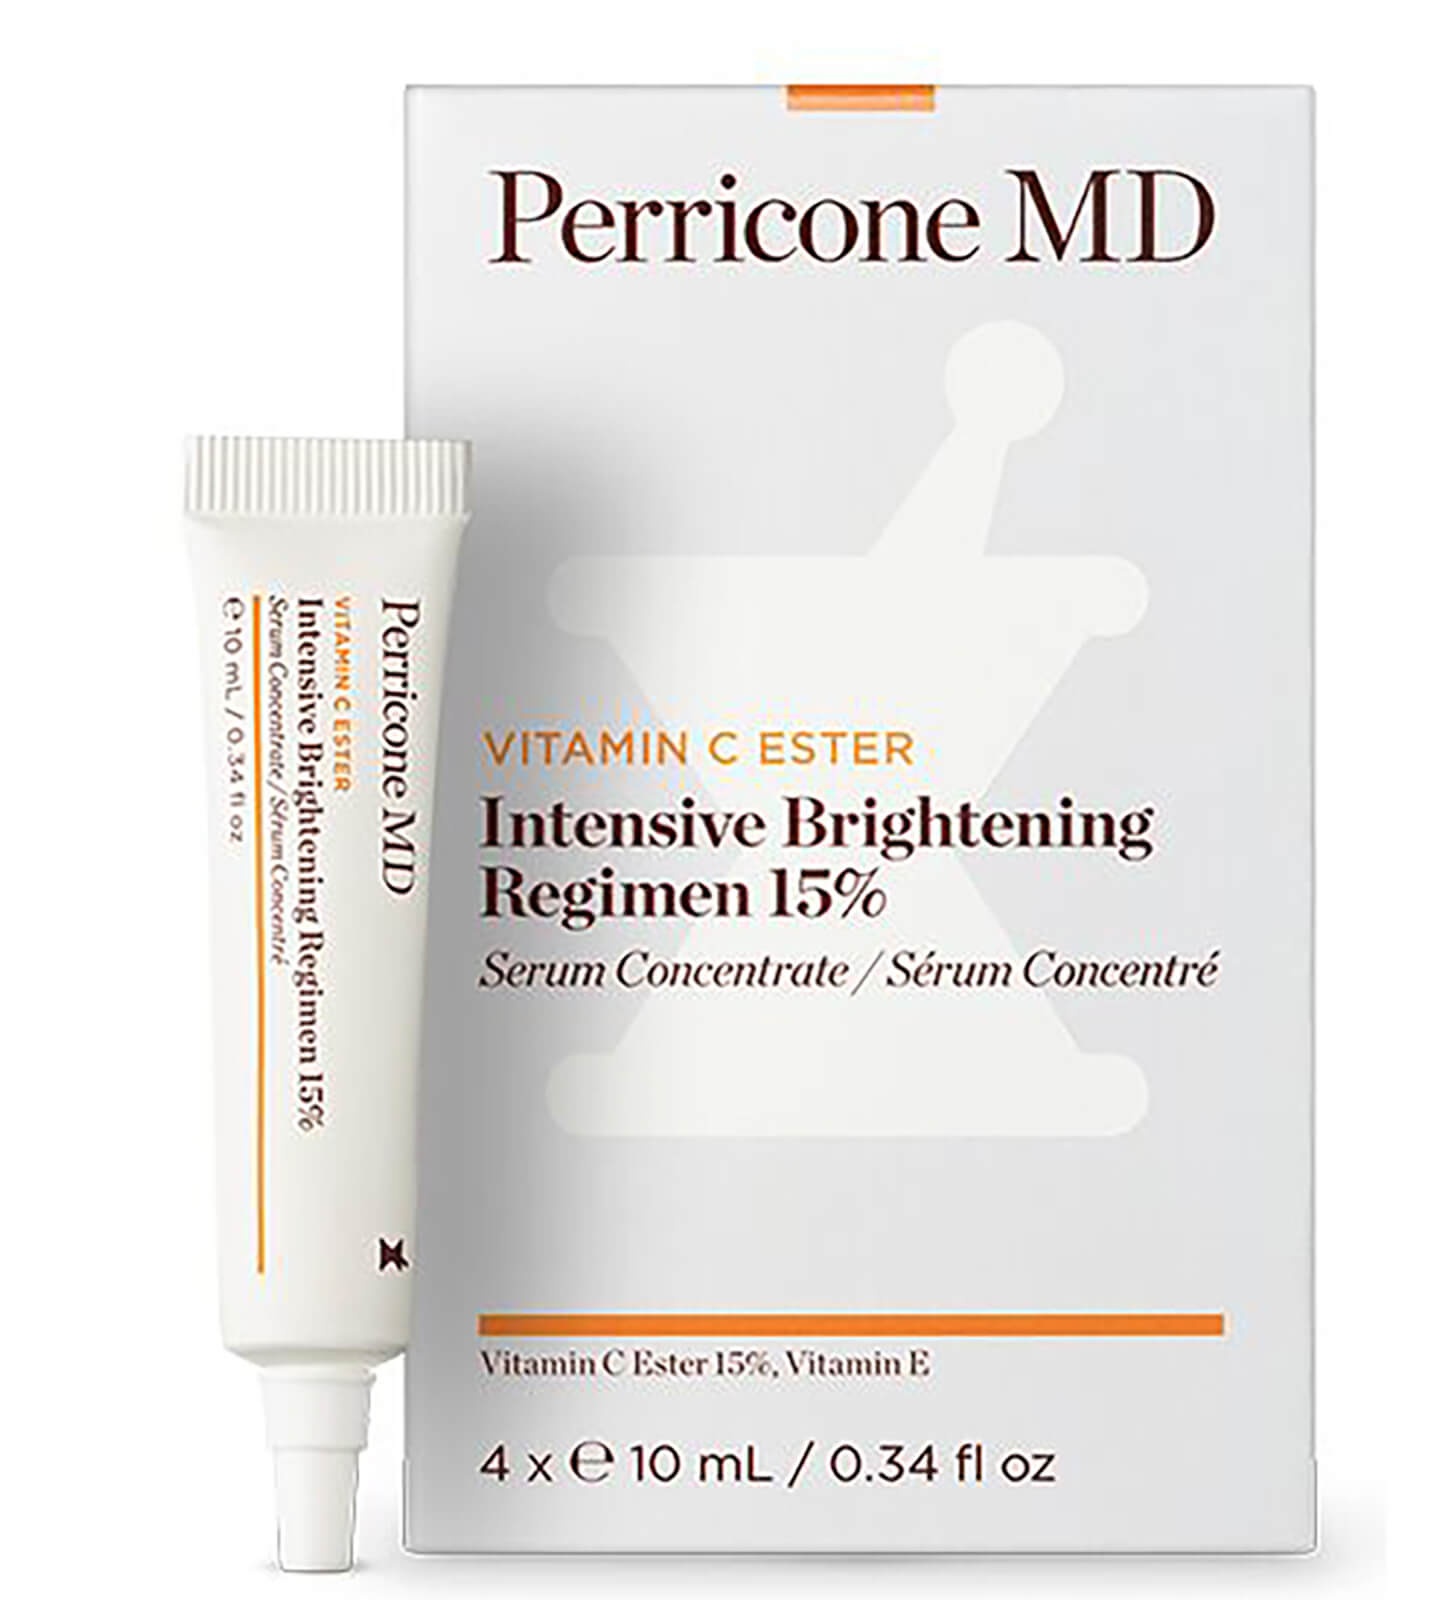 Perricone MD Vitamin C Ester  Intensive Brightening Regimen 15%